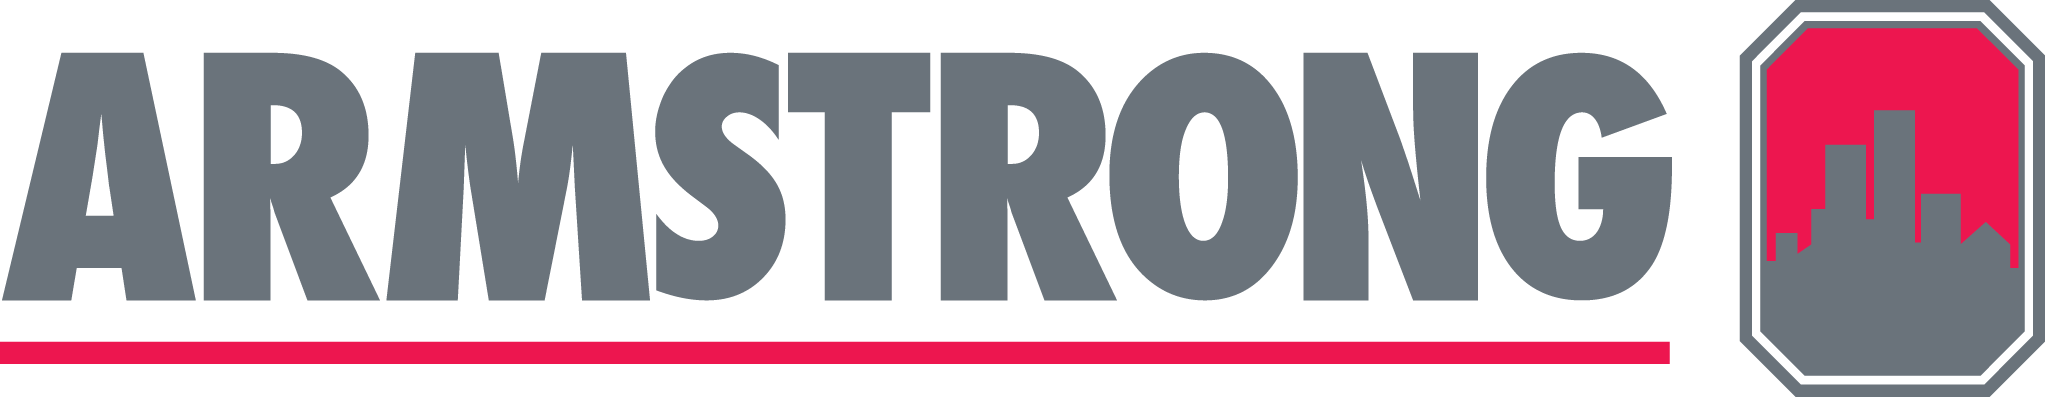 Logo_Armstrong